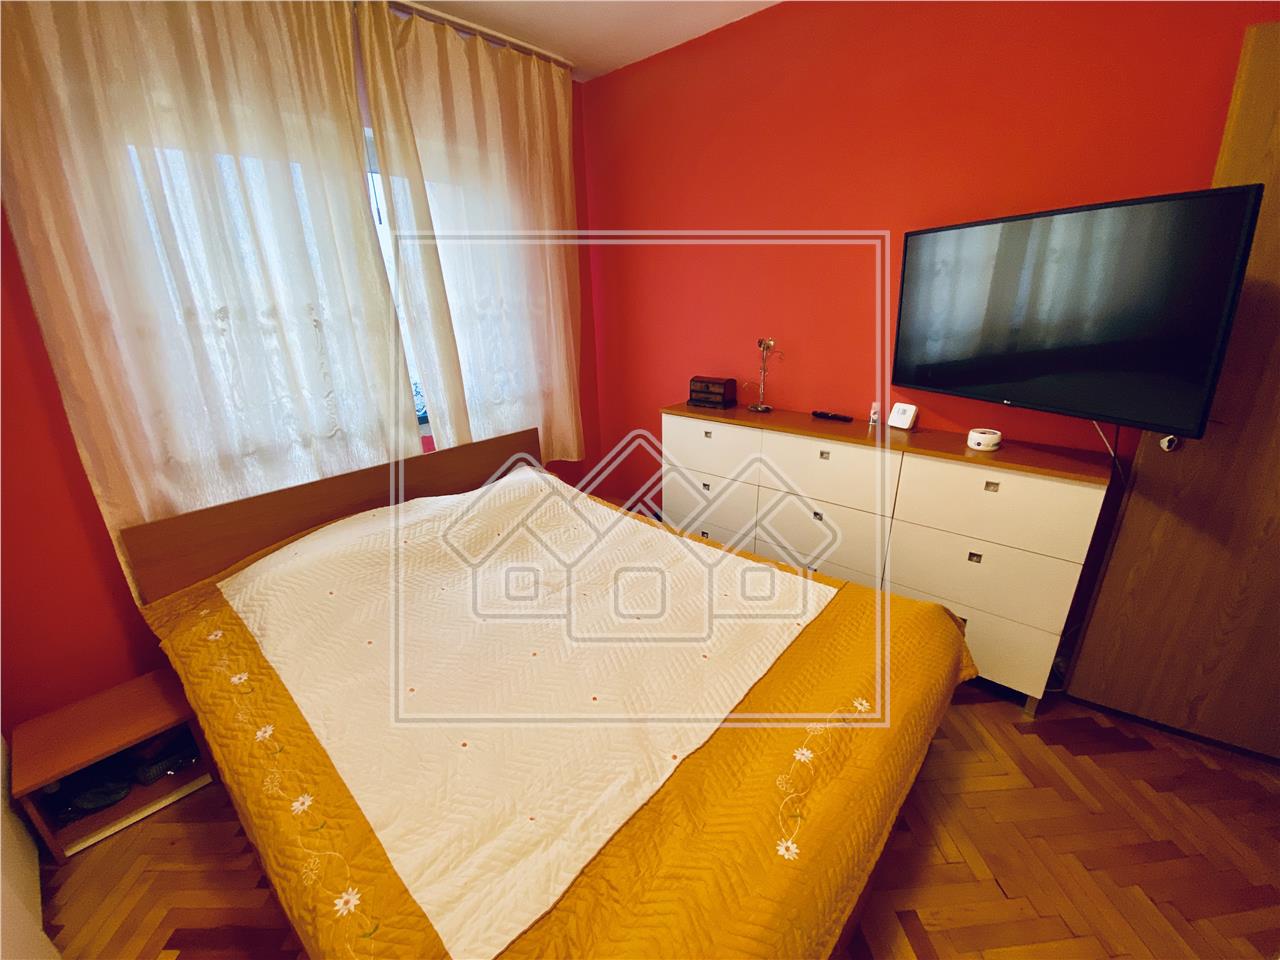 Wohnung zu verkaufen in Sibiu - 3 Zimmer - 2 Balkone - Schwimmschule